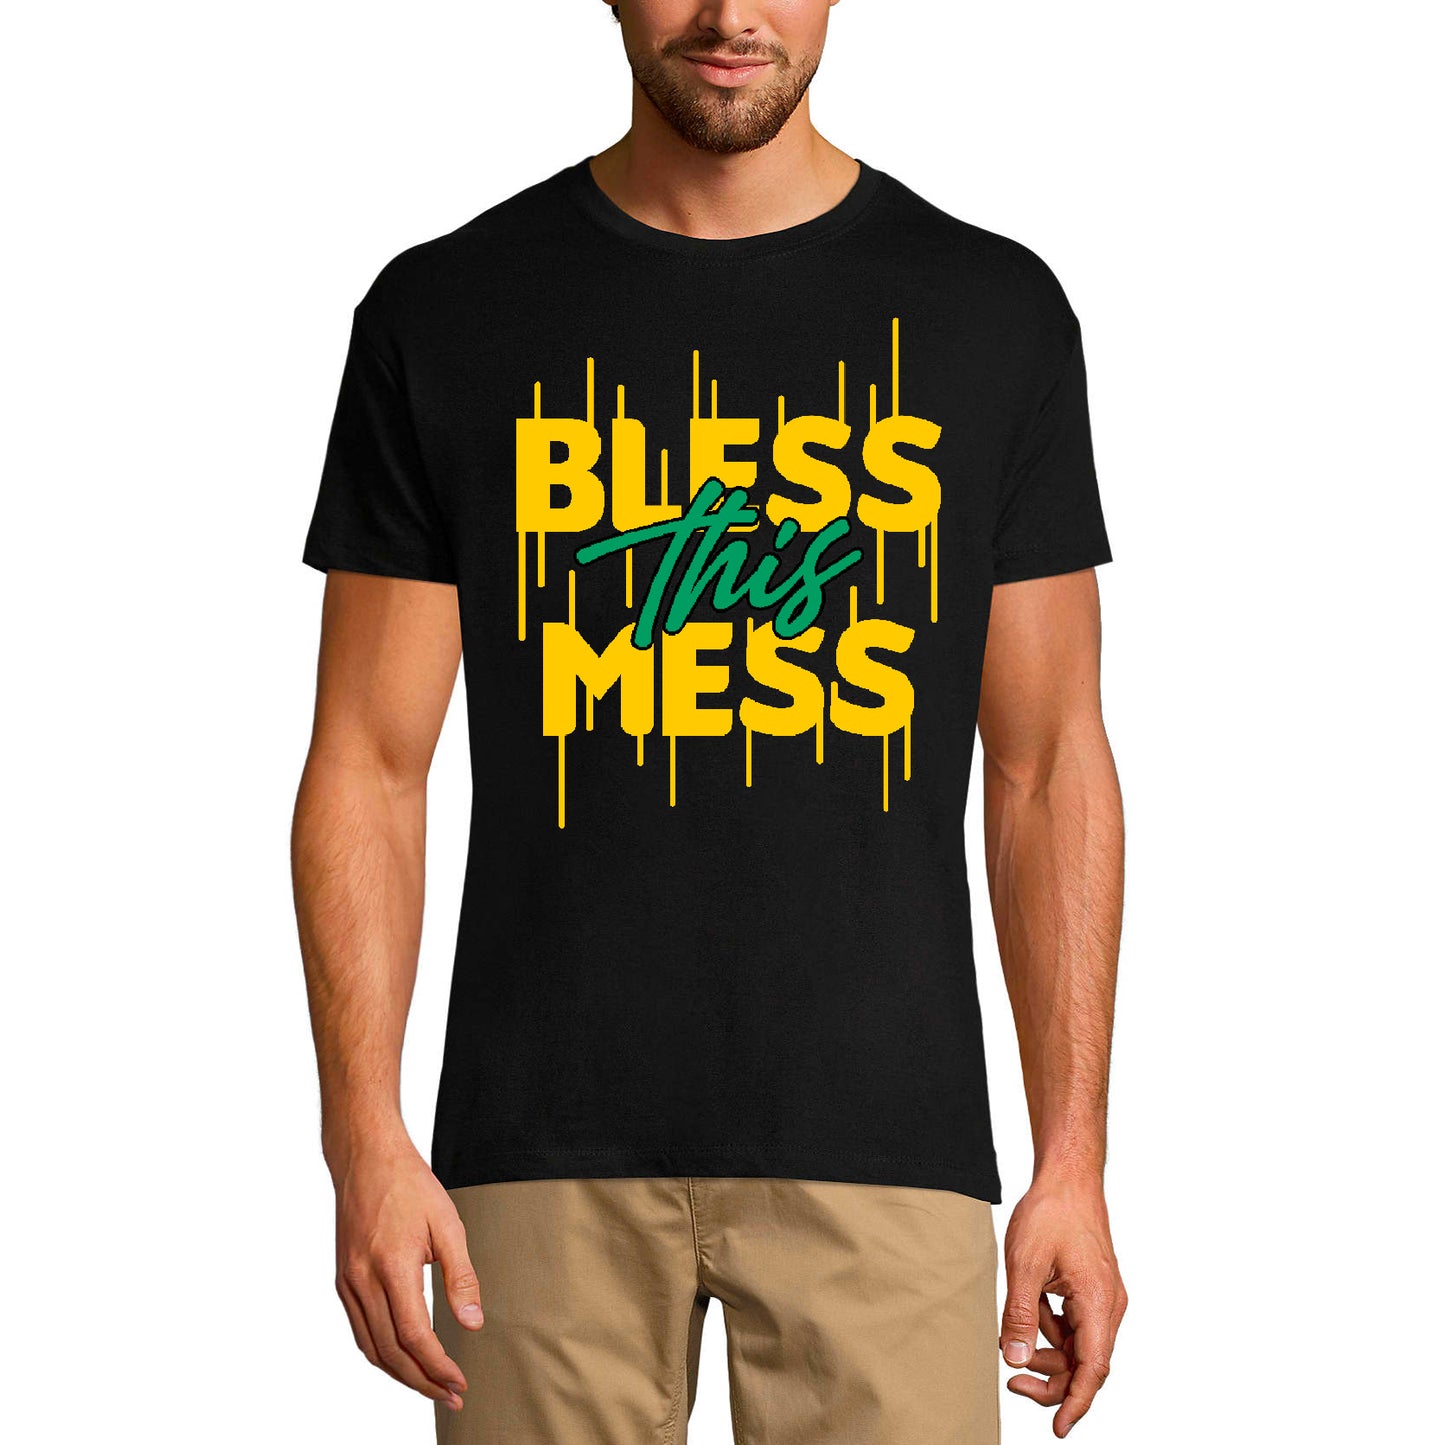 ULTRABASIC Men's Religious T-Shirt Bless This Mess - God Jesus Christ Shirt